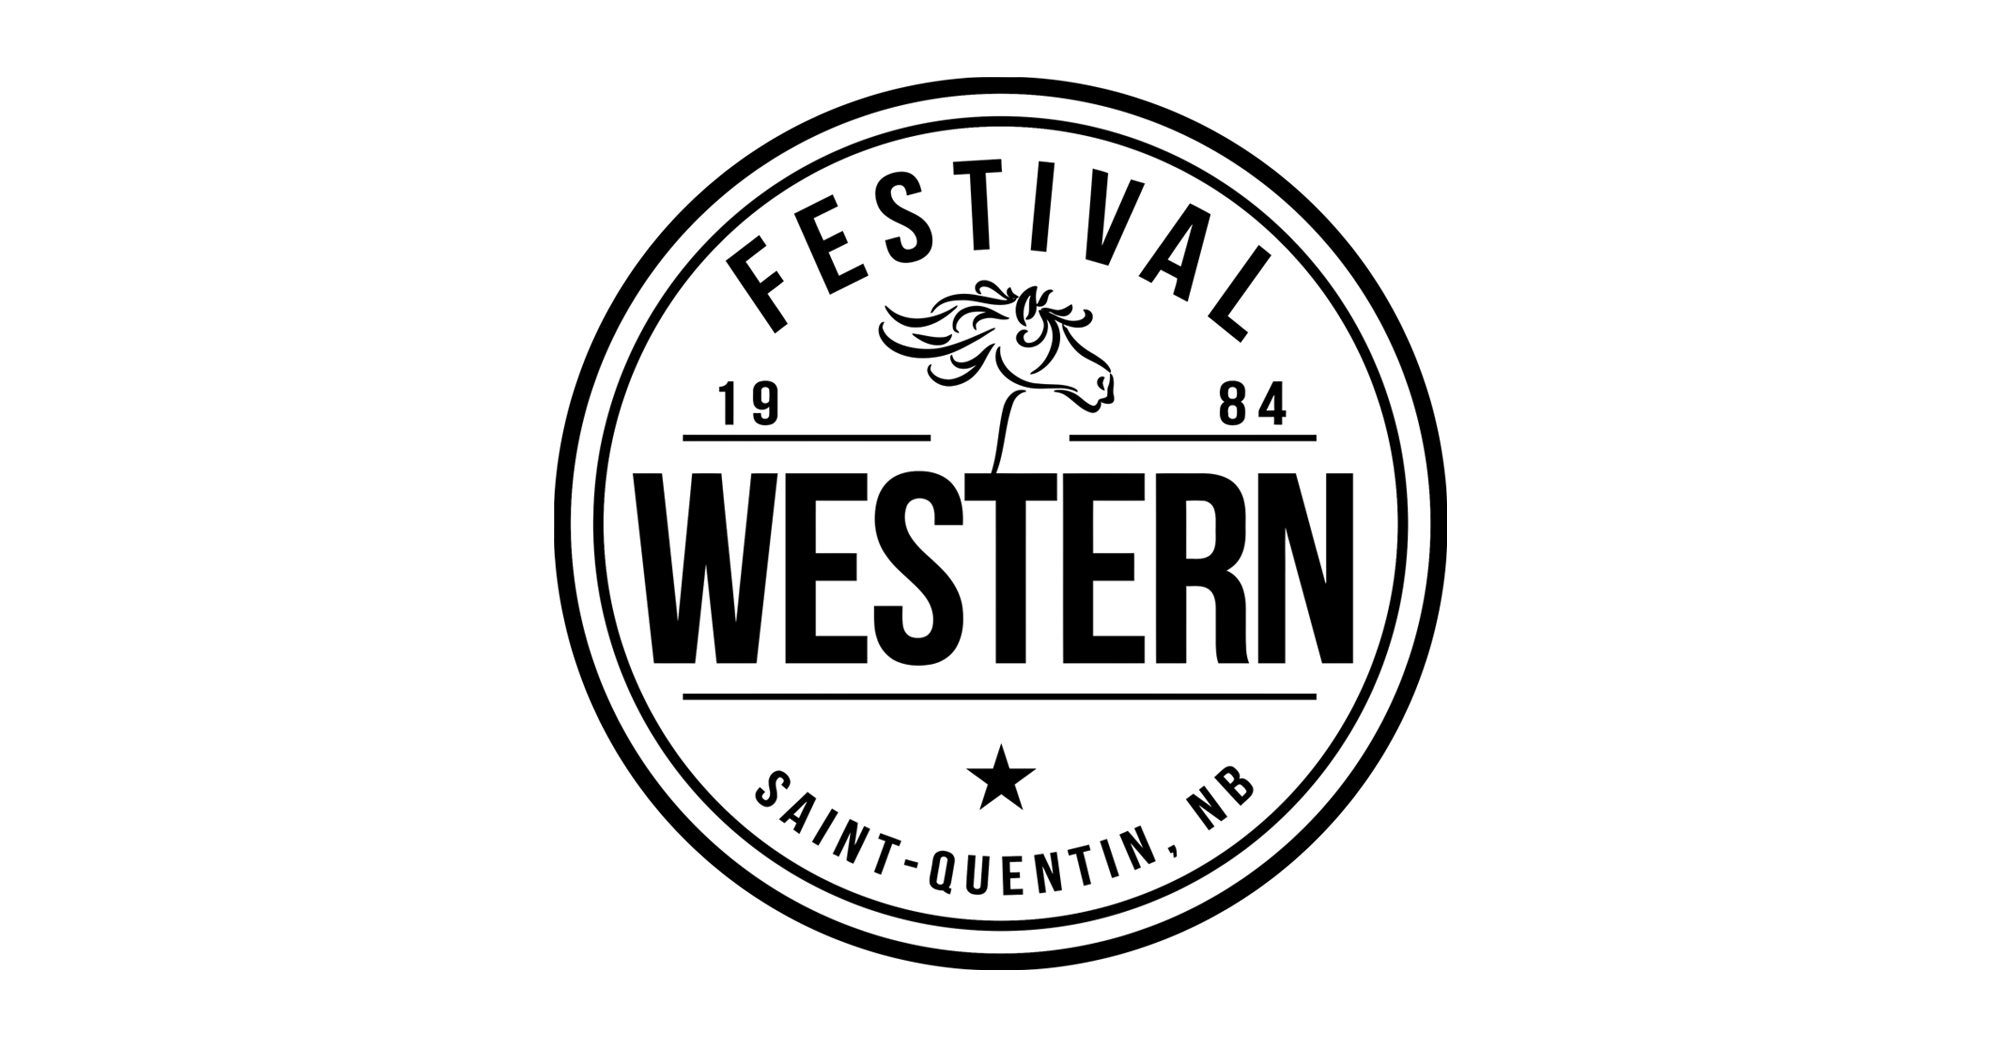 Festival Western de Saint-Quentin